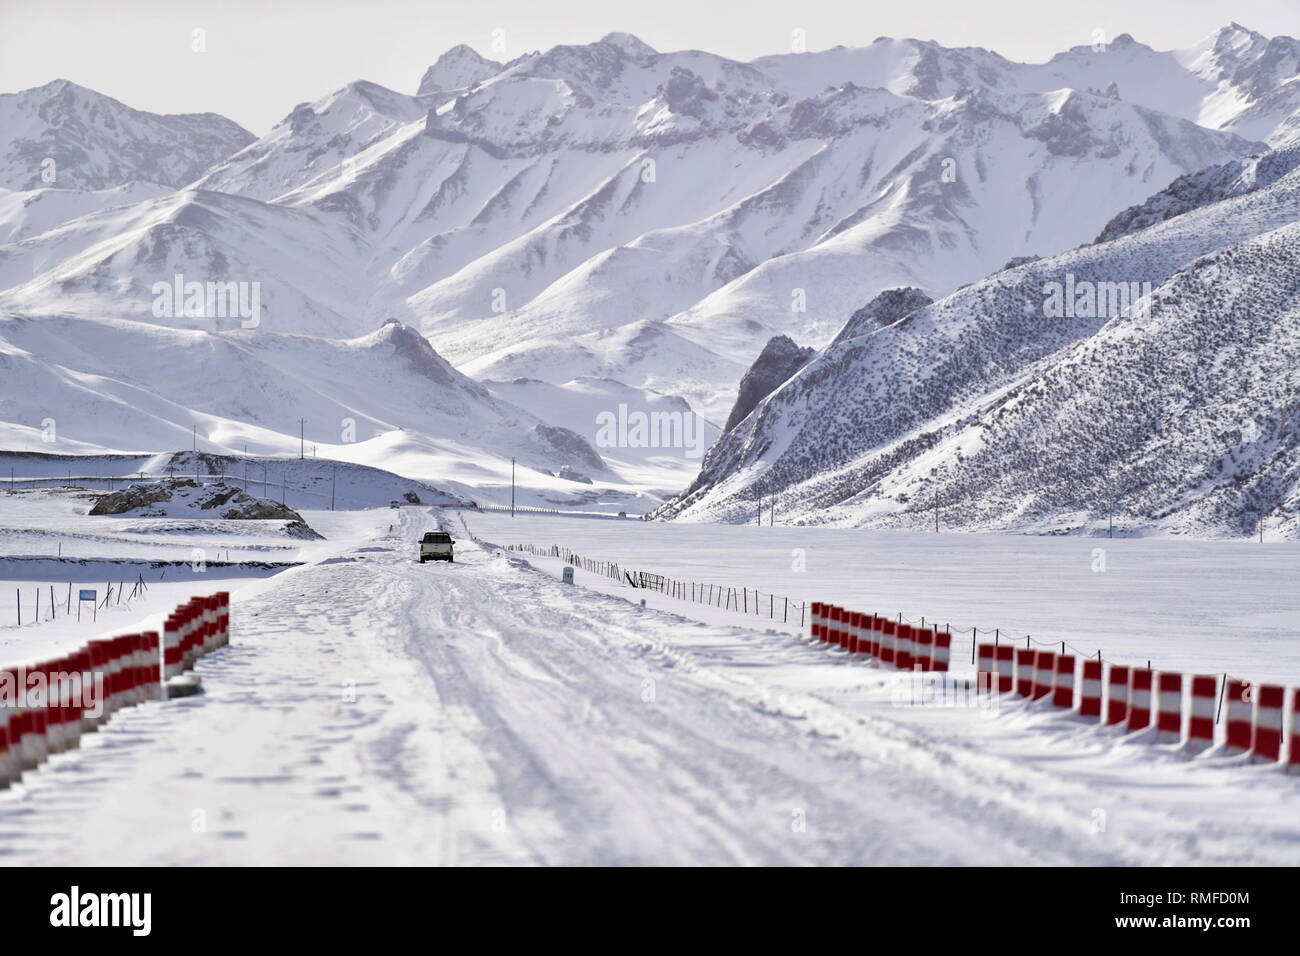 Yushu, dans la province de Qinghai en Chine. Feb 14, 2019. Un véhicule tombe sur une route dans le comté de Zaduo La préfecture autonome tibétaine de Yushu, dans la province de Qinghai en Chine, le 14 février 2019. Après des jours de tempêtes de neige, les routes dans de nombreux domaines de la préfecture autonome tibétaine de Yushu sont couverts sous la neige jusqu'à 45 centimètres. L'autorité locale d'Zaduo a envoyé 37 grandes machines pour le blizzard les zones les plus touchées pour effacer les routes couvertes de neige. Credit : Zhang Long/Xinhua/Alamy Live News Banque D'Images